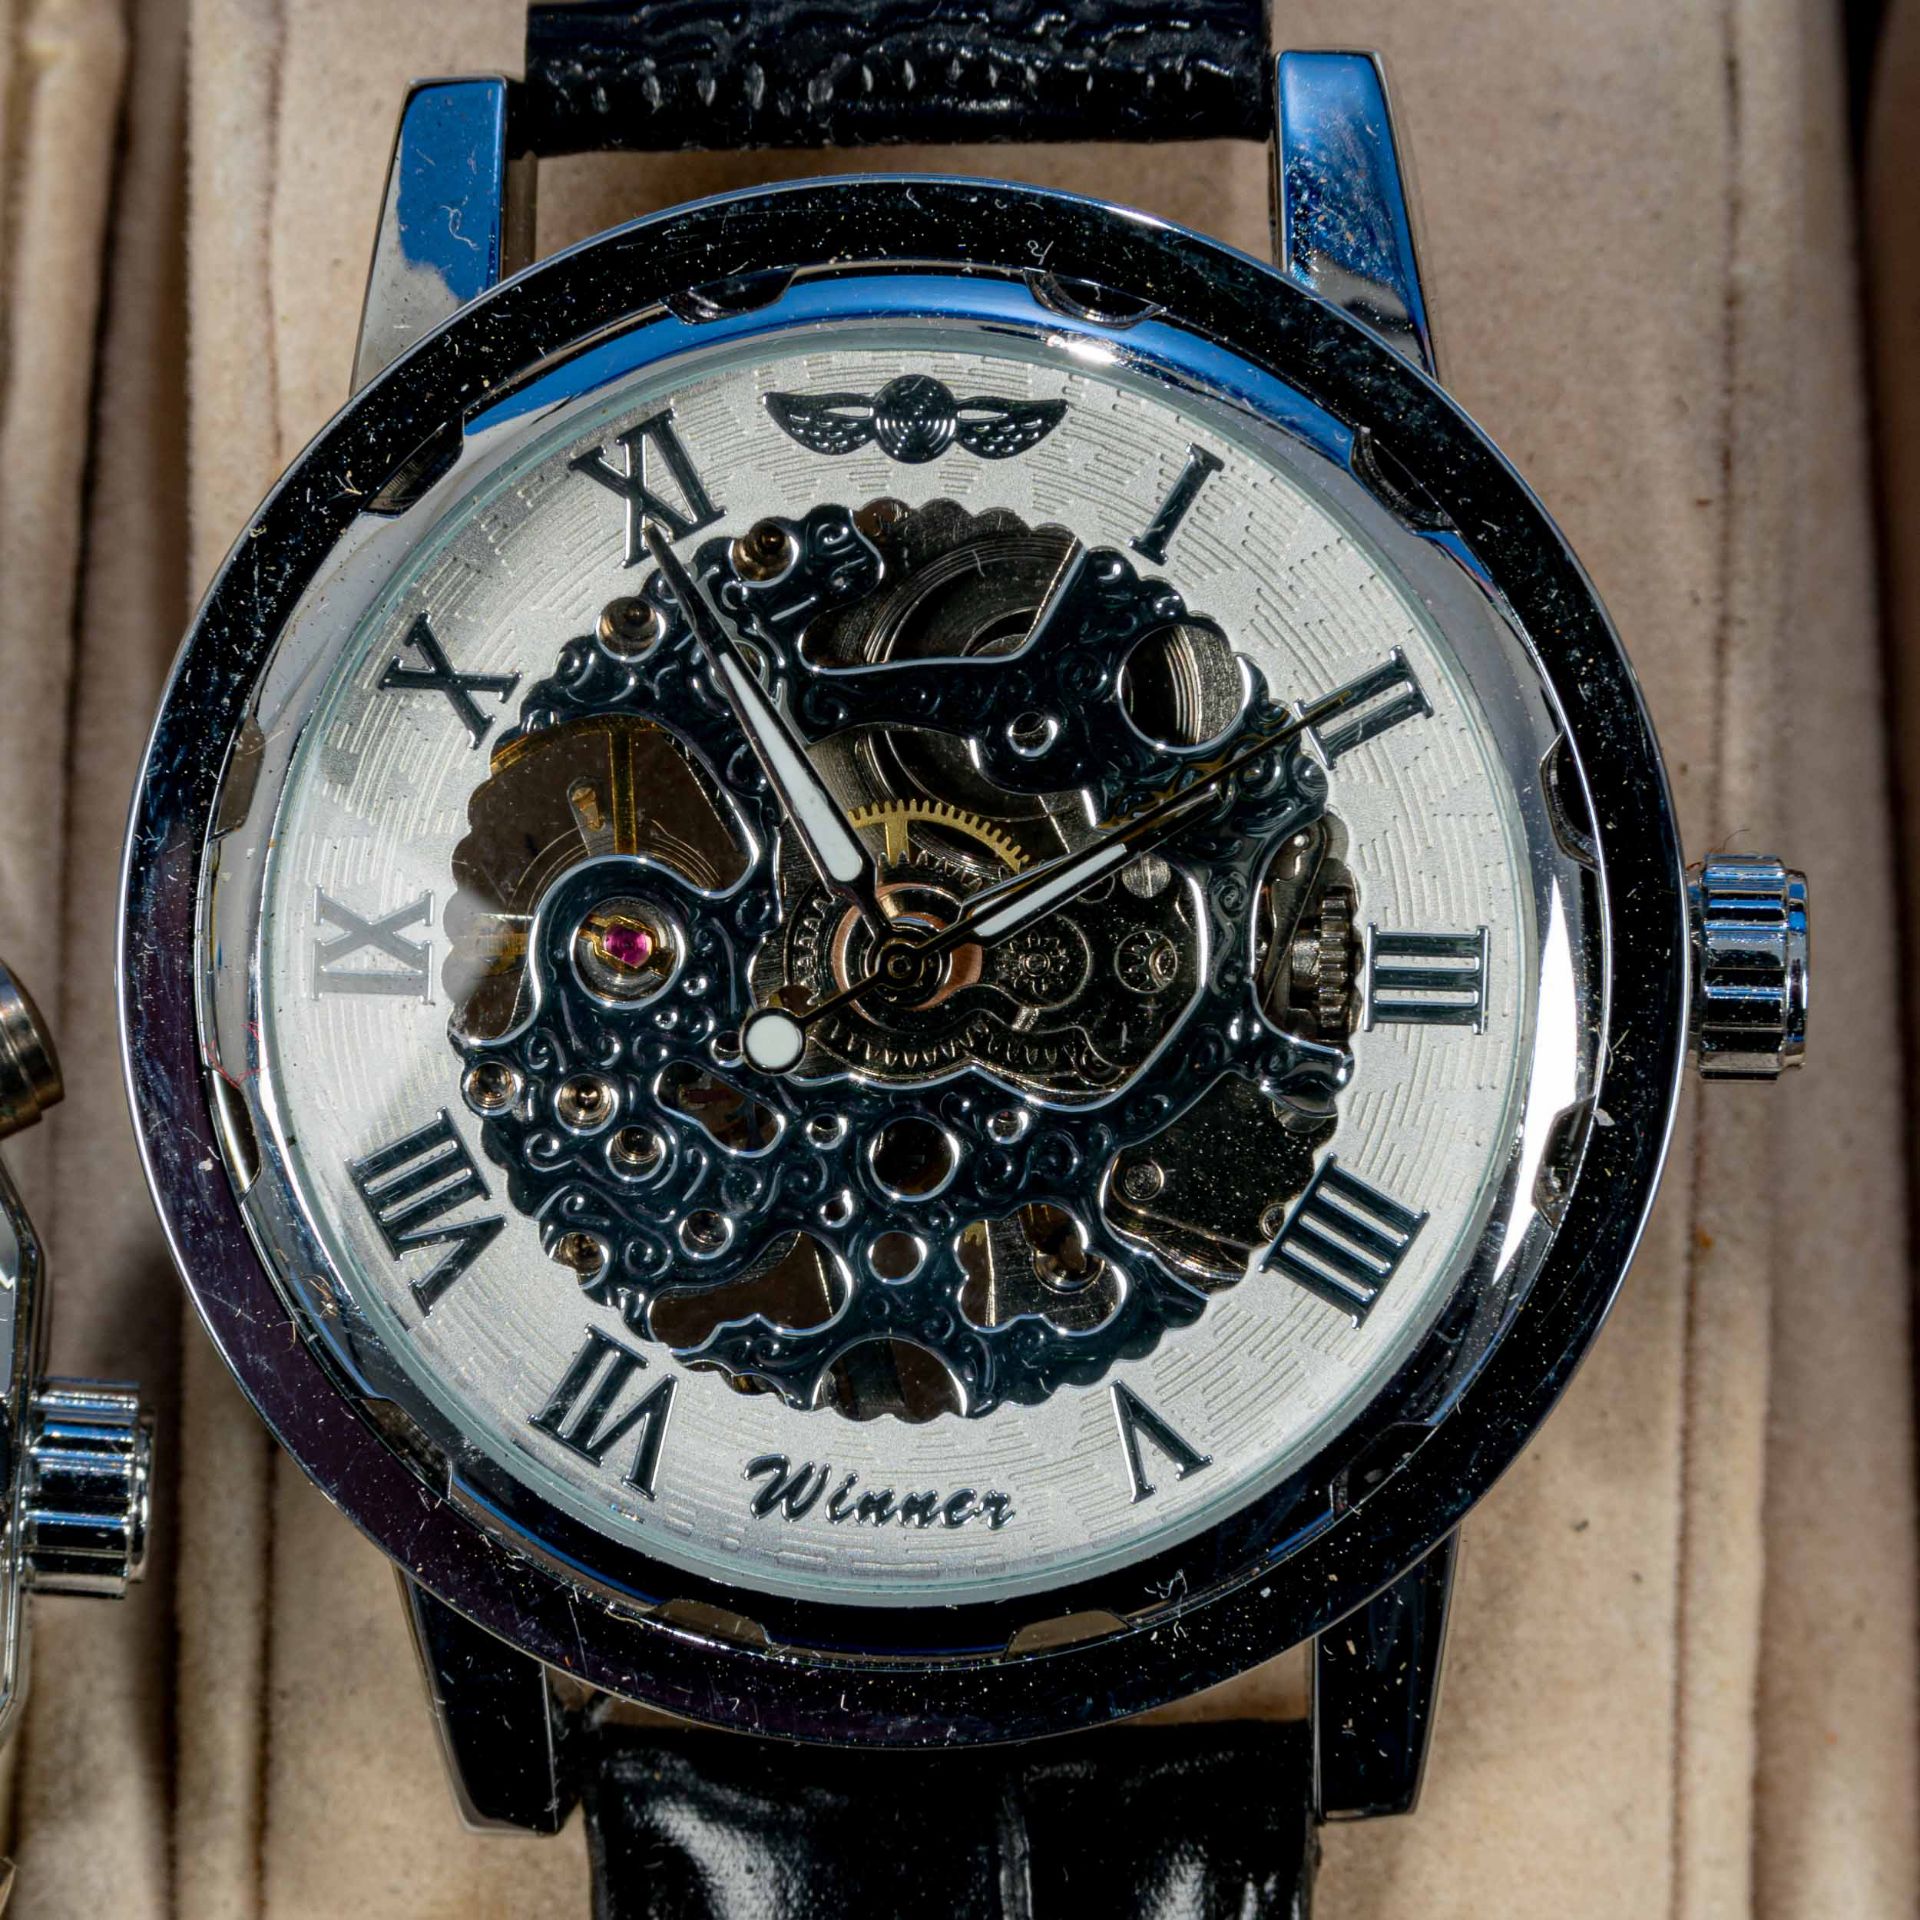 7teilige Uhrensammlung, u. a. der Marke Swatch; versch. Alter, Größen, Materialien, Hersteller, Wer - Image 4 of 8